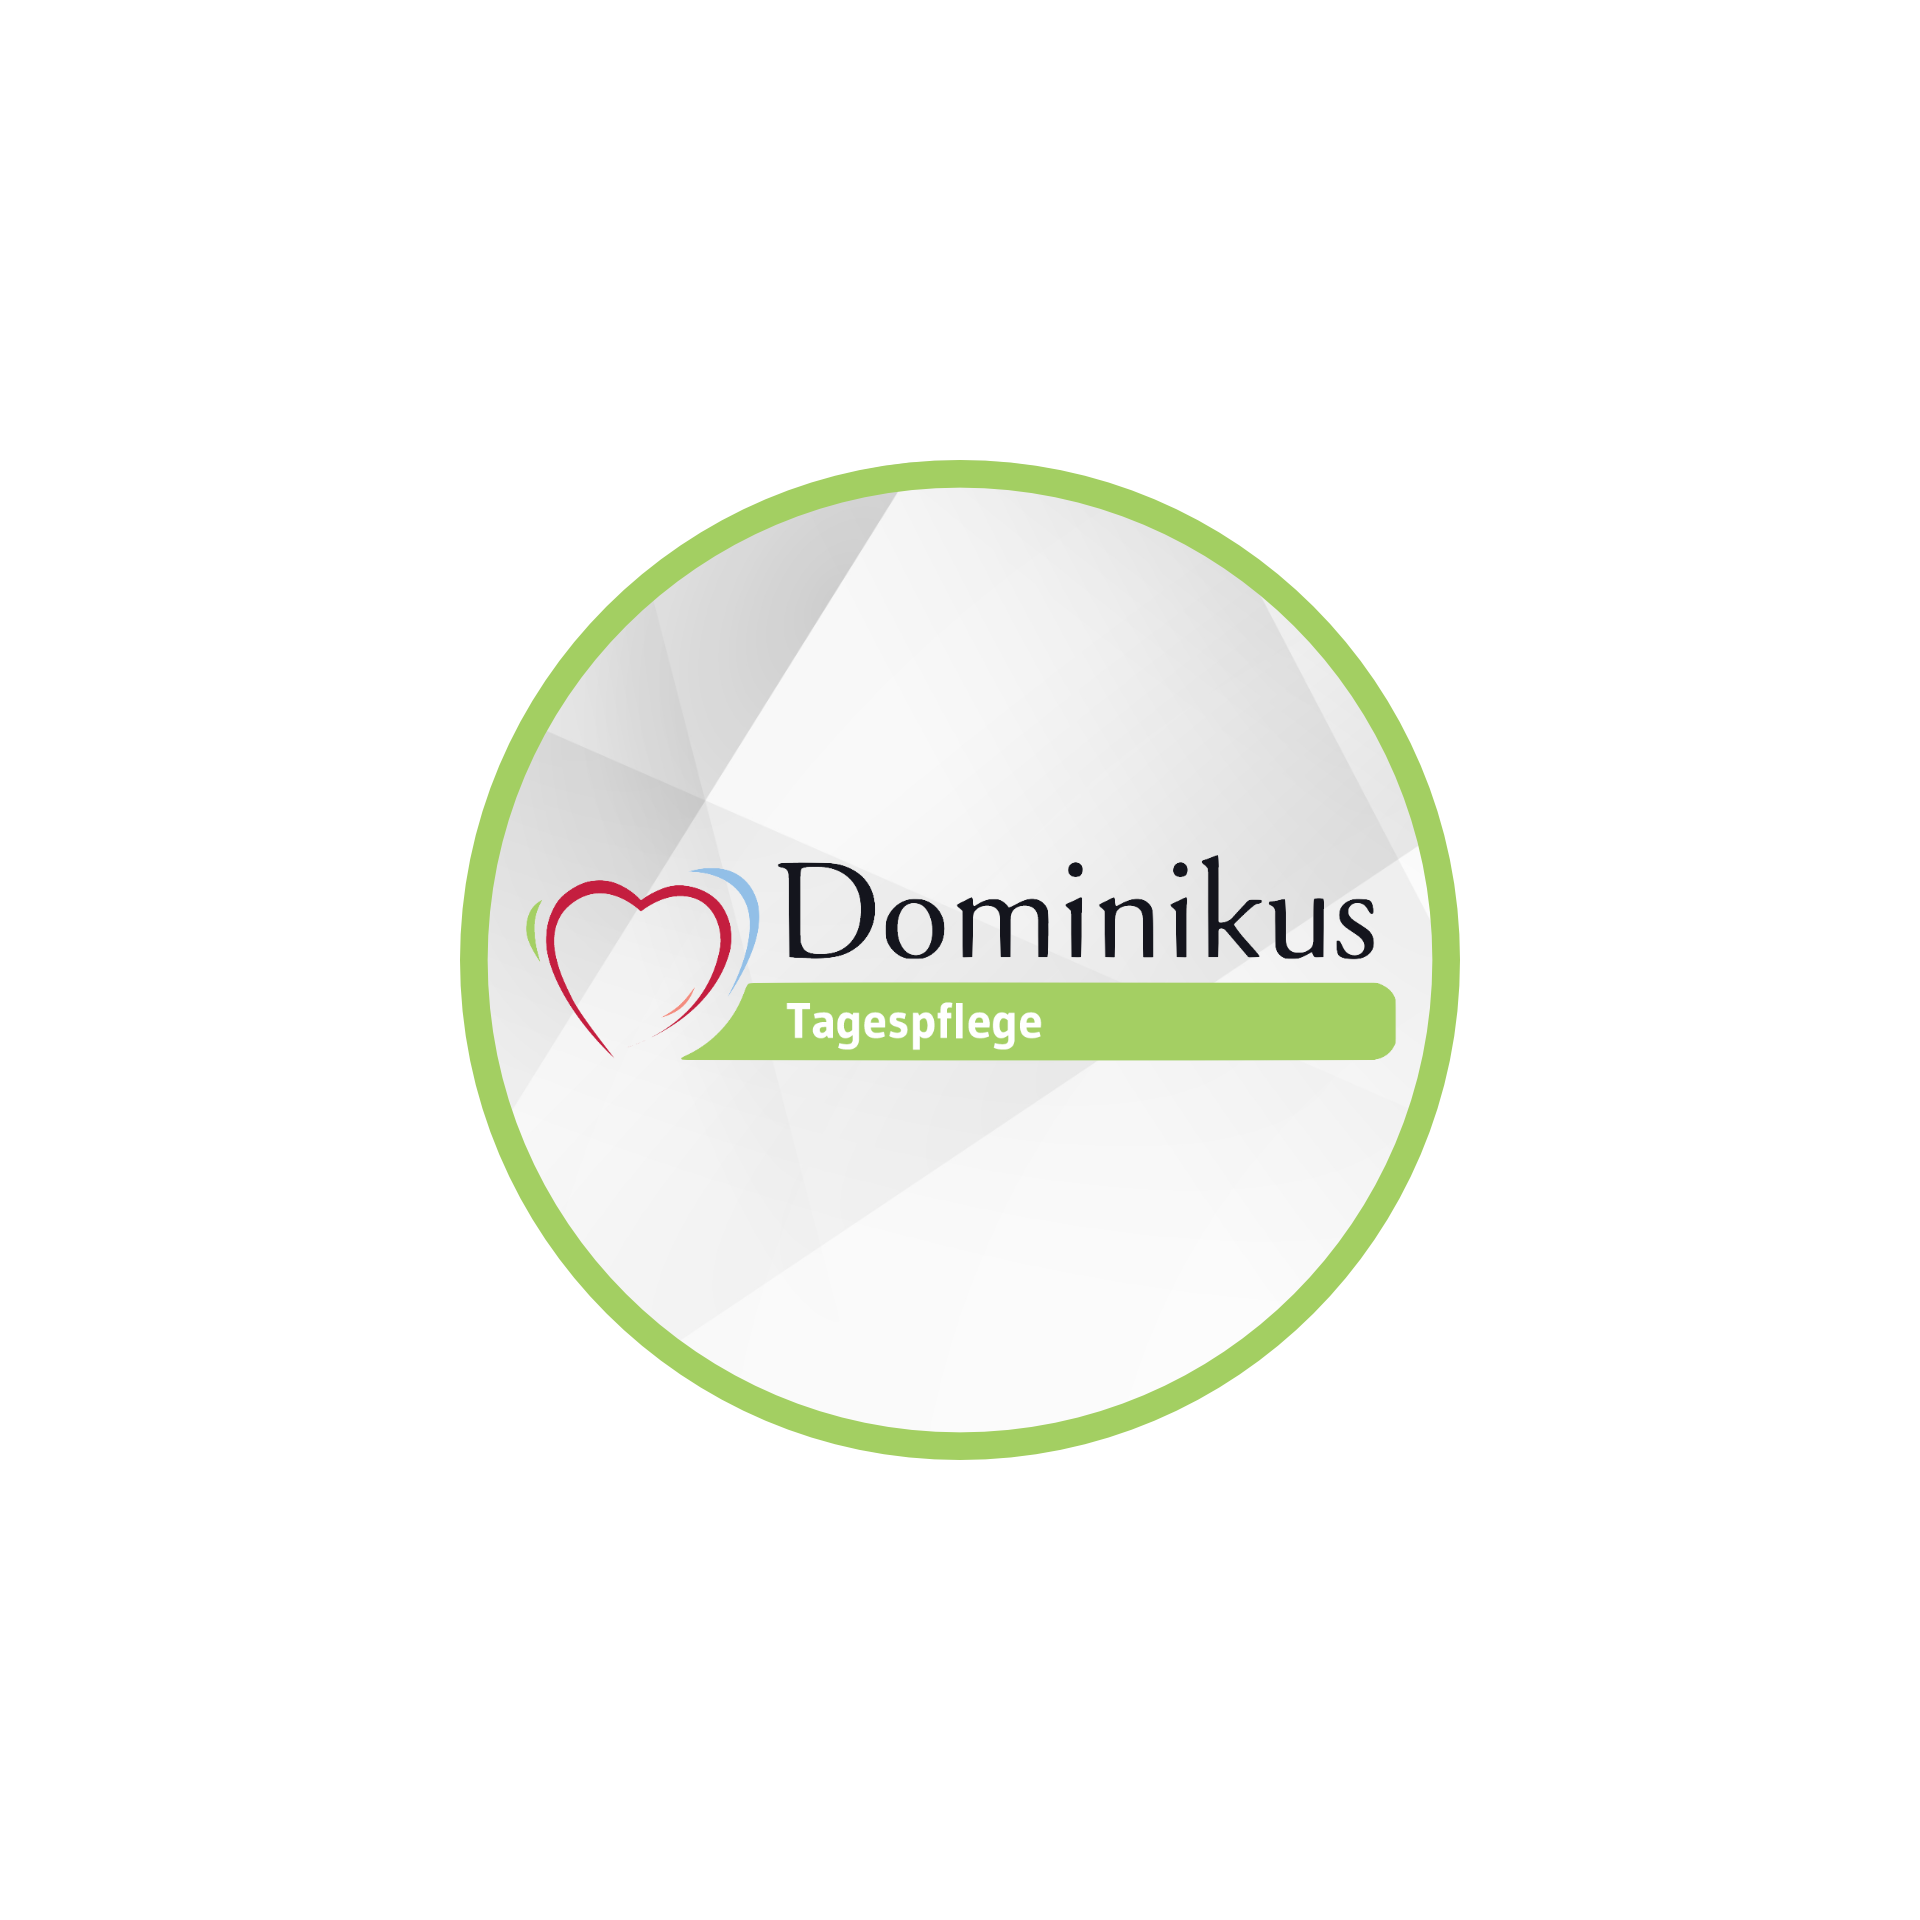 Dominikus Tagespflege Logo